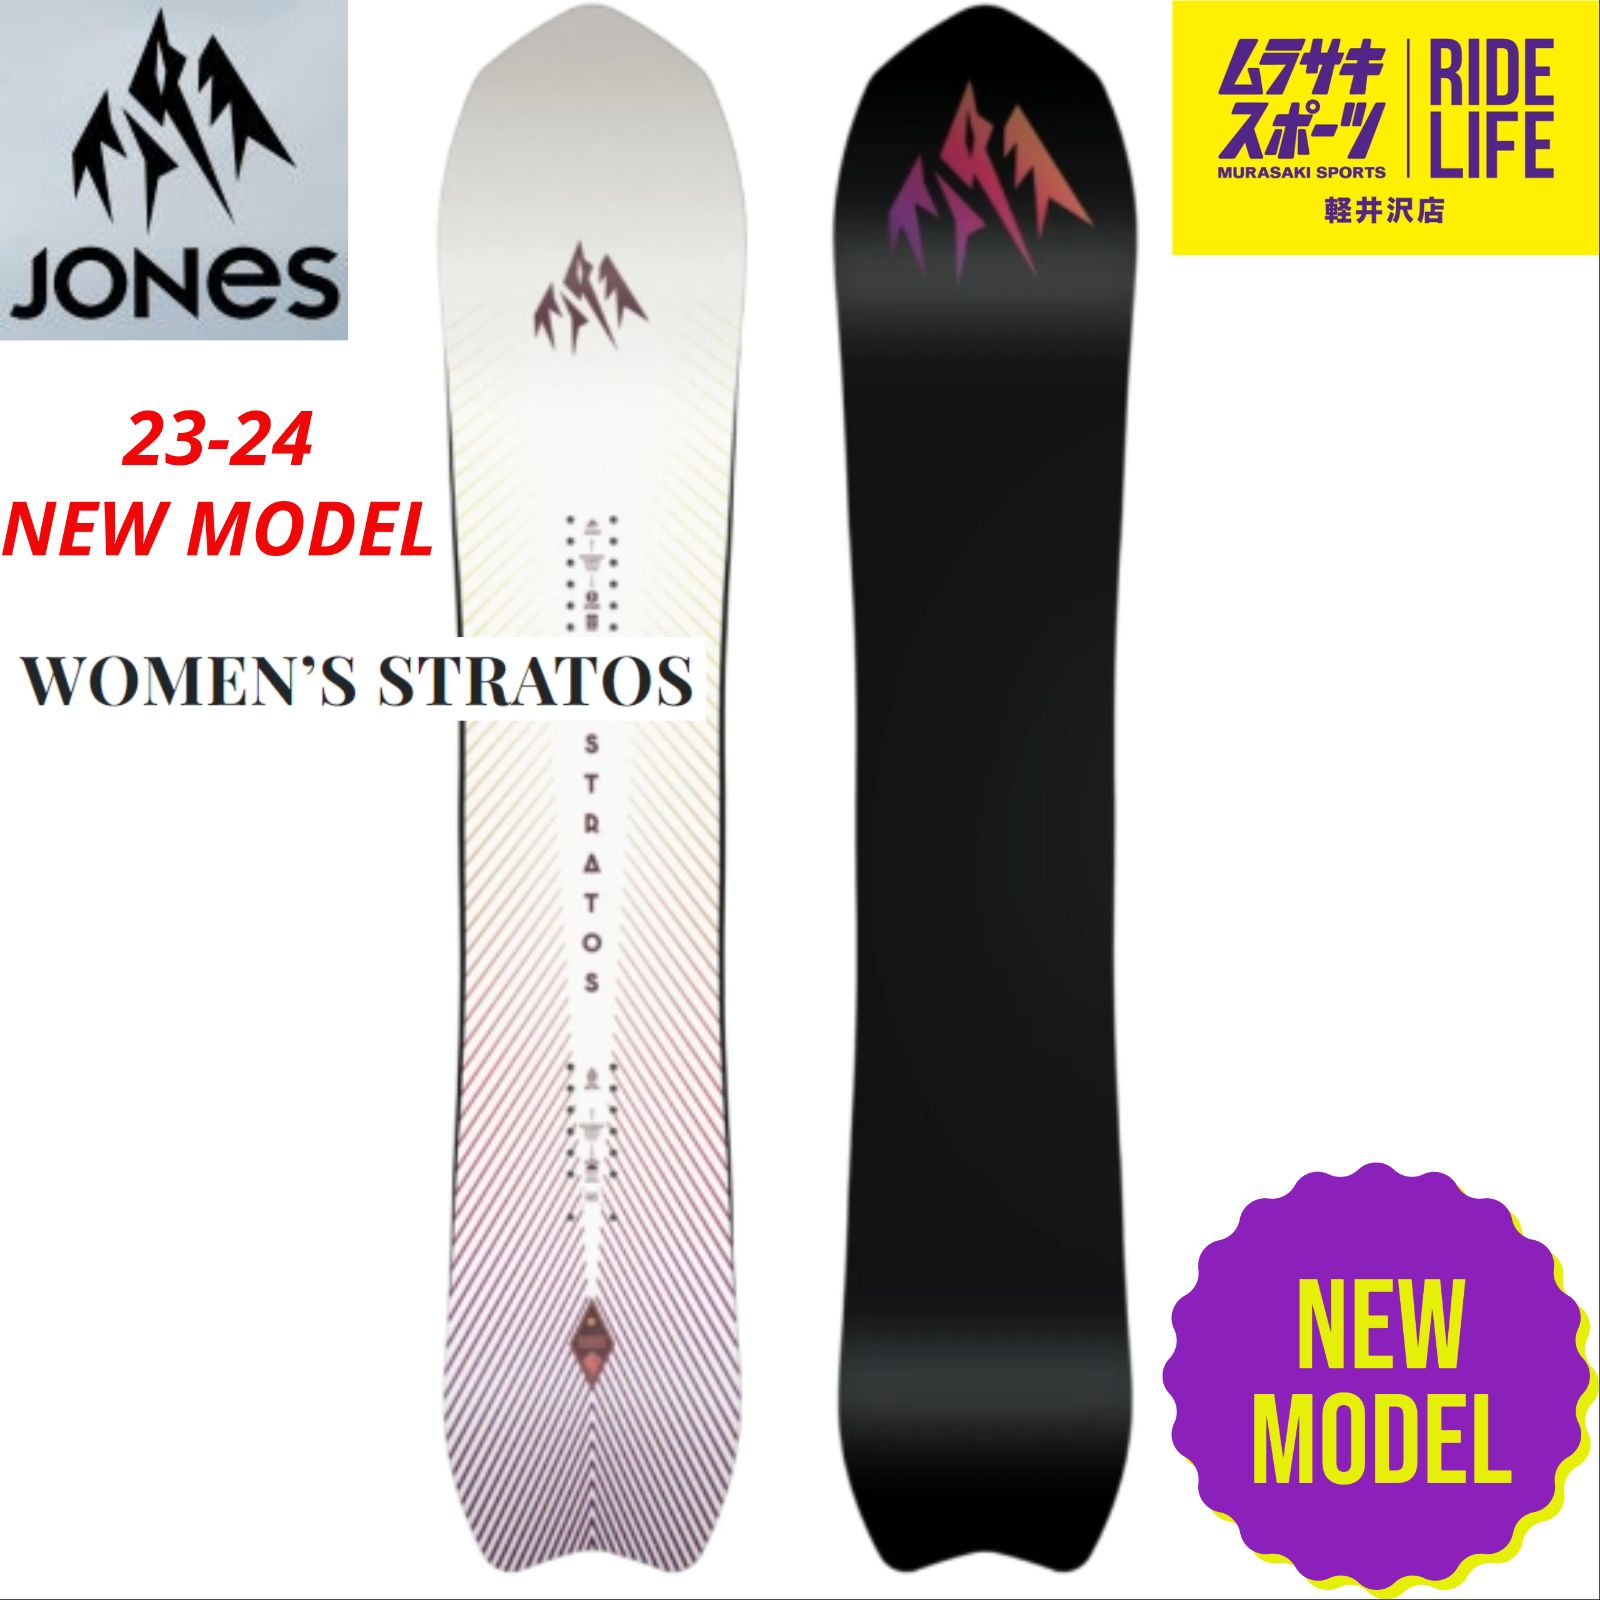 ムラスポ公式】JONES ジョーンズ W's STRATOS 23-24 NEW スノーボード